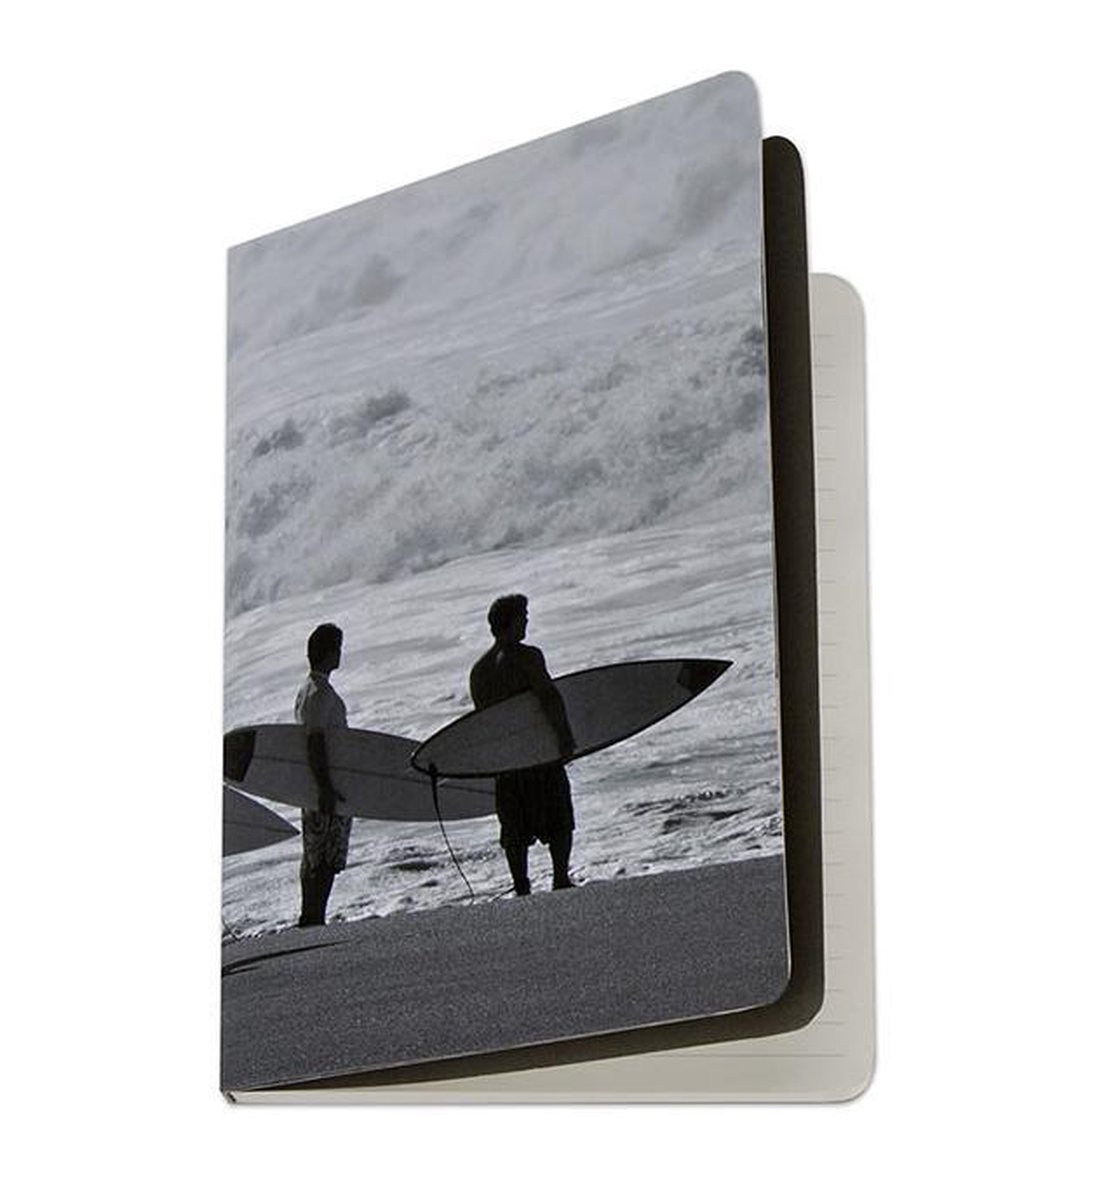 A5 gelinieerd notitieboek notitieboek met surfer - surf notebook